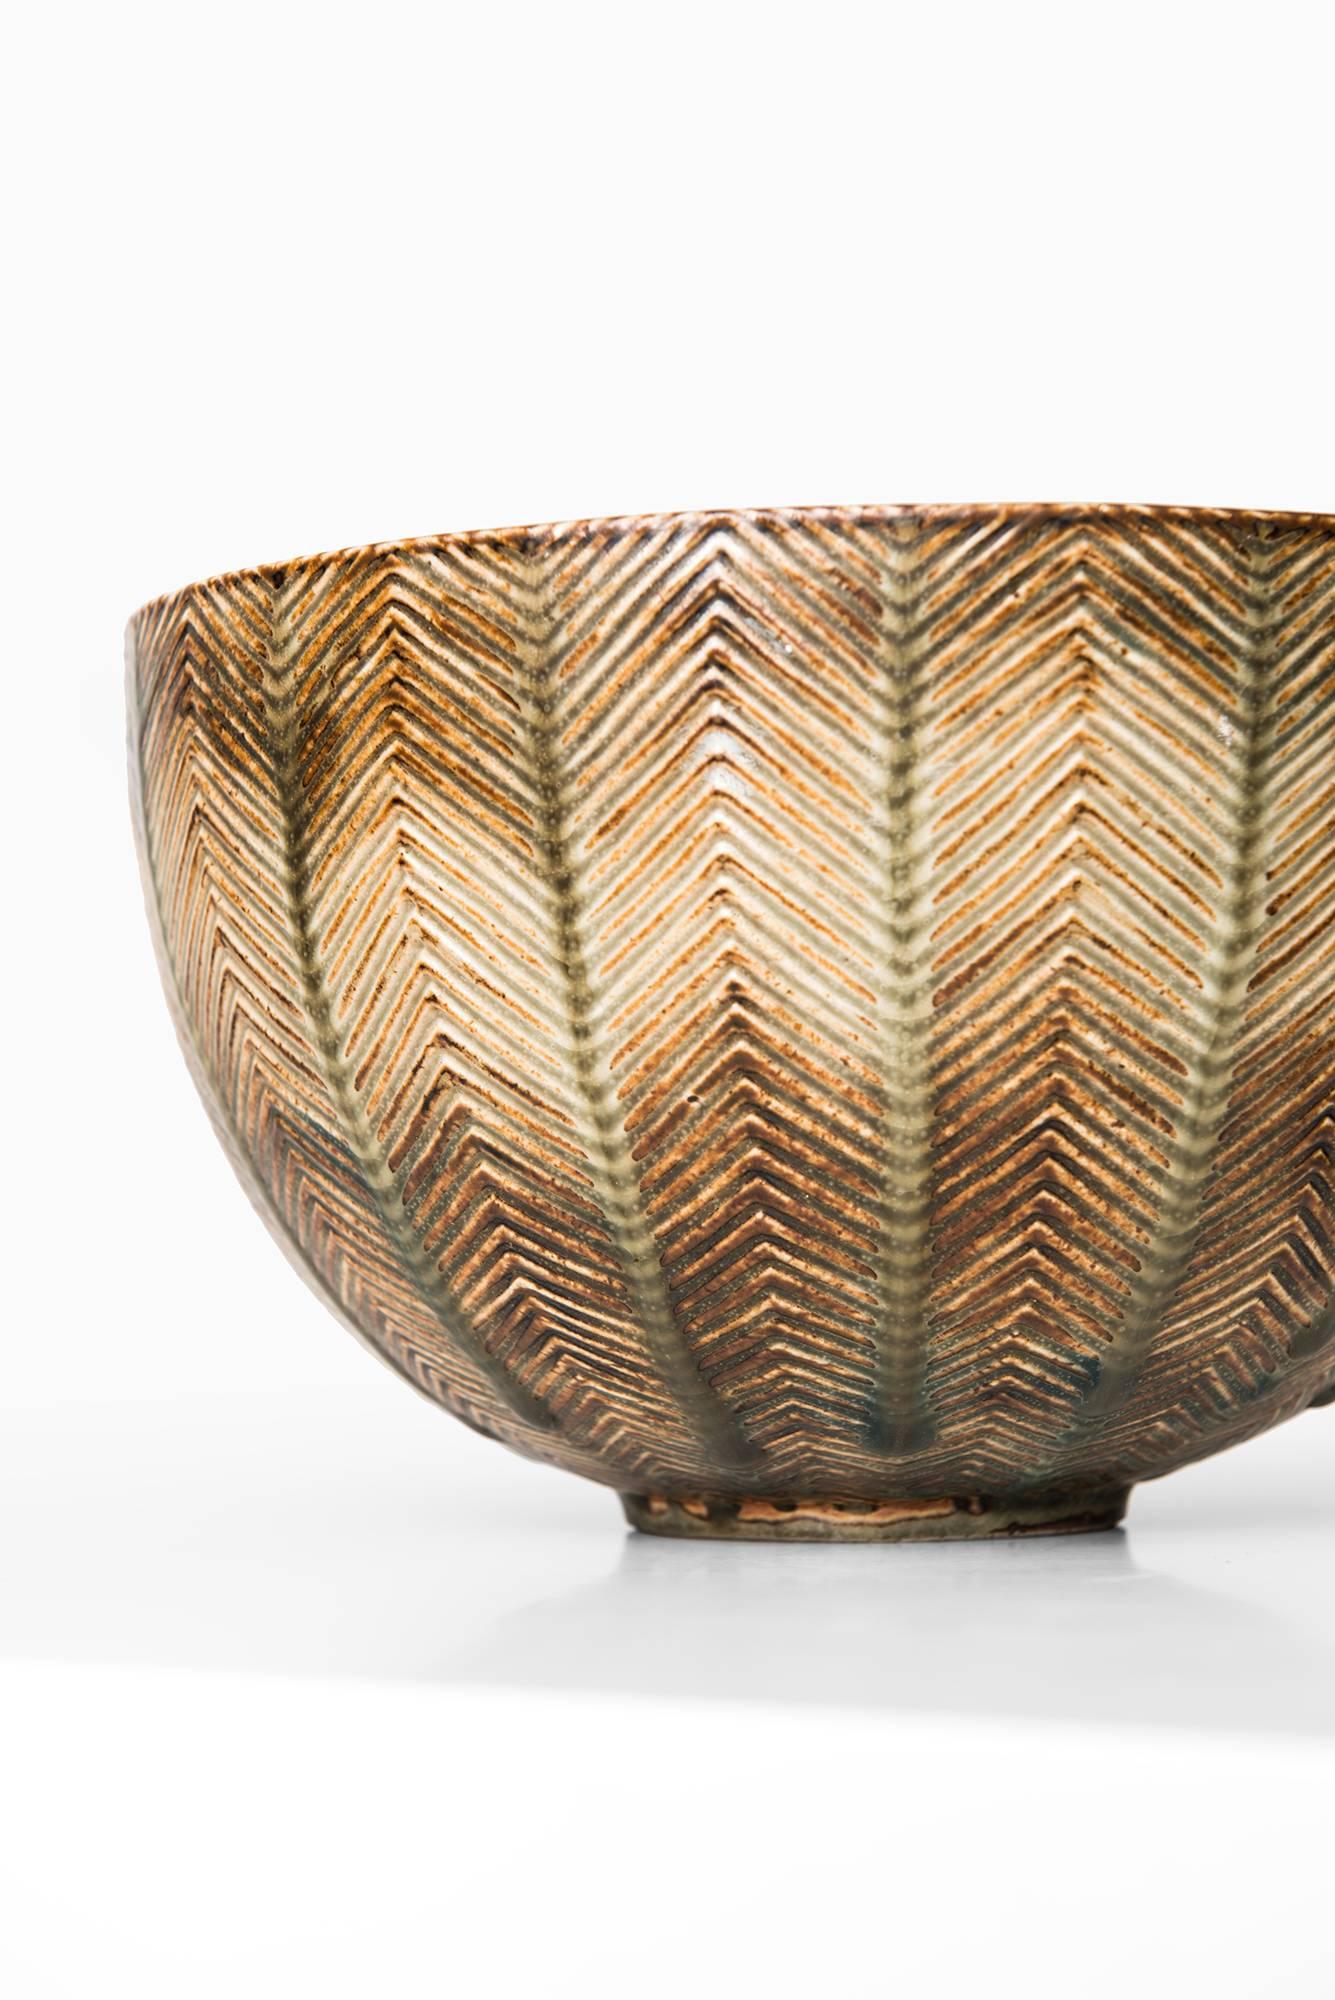 Mid-20th Century Axel Salto Ceramic Bowl Nr 20716 by Royal Copenhagen in Denmark